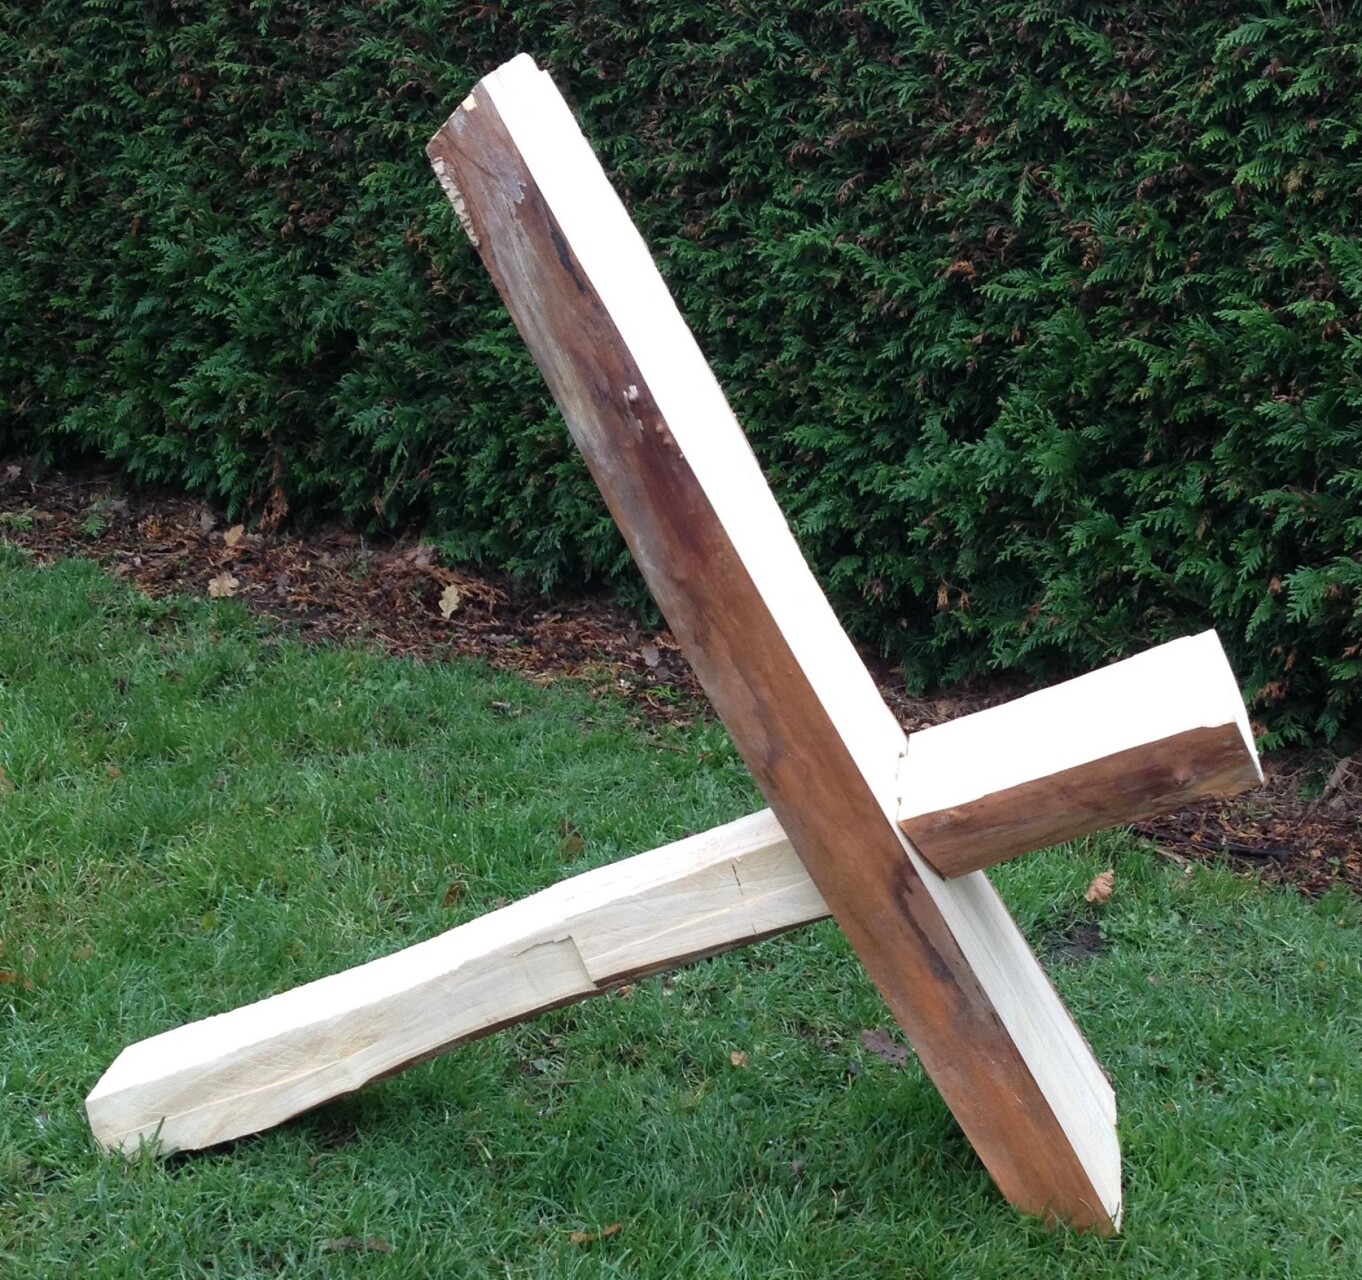 Prototype van een houten stoeltje